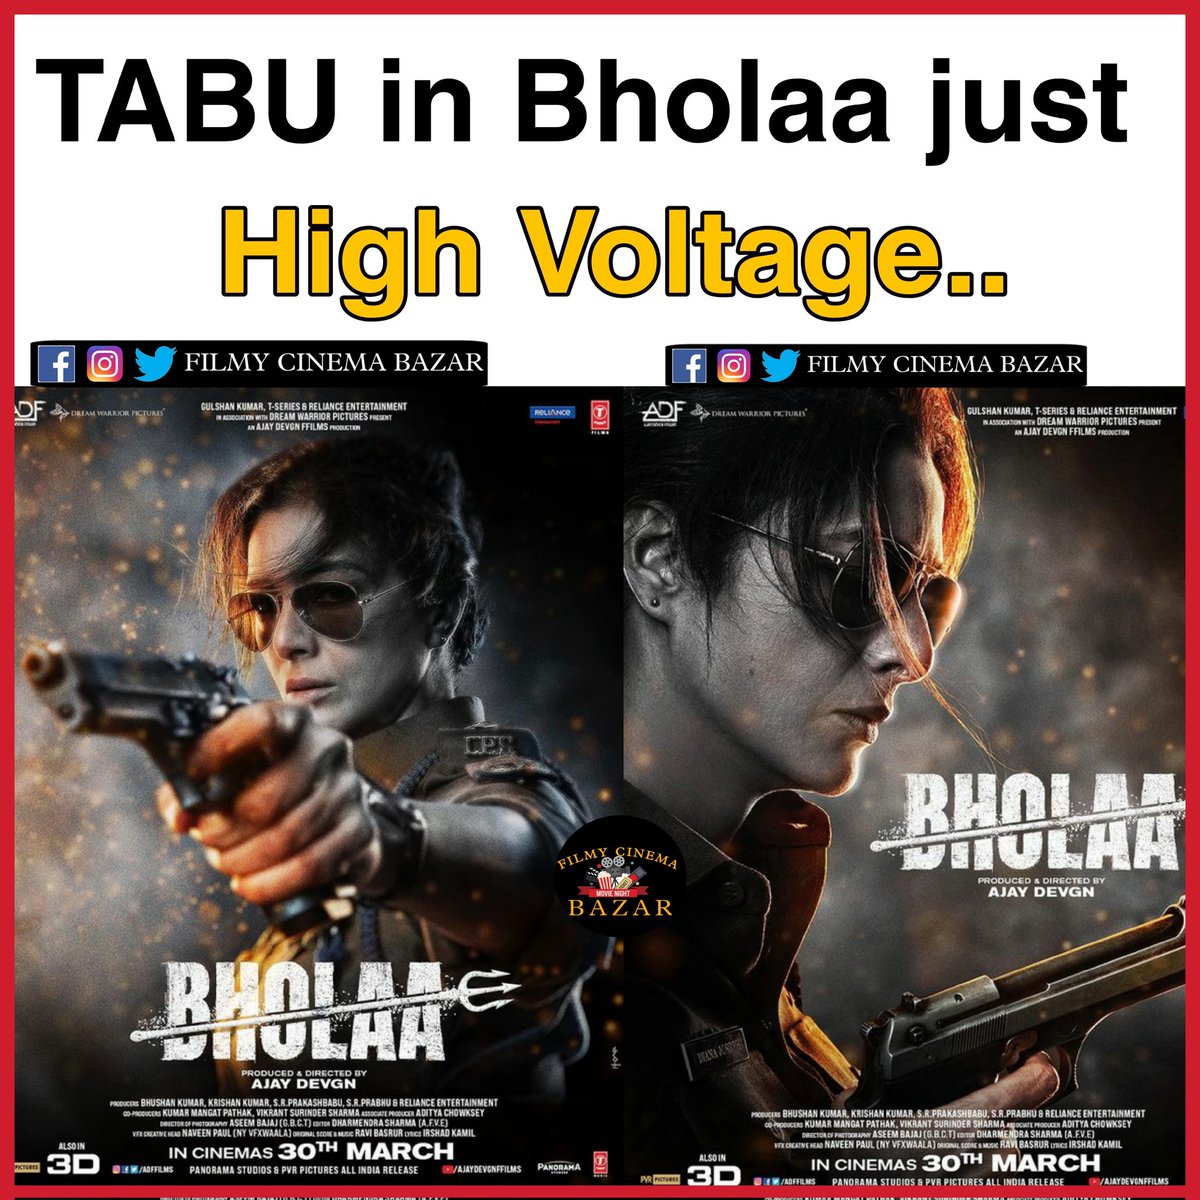 Tabu's  look just 🔥🔥
#tabu #bholaa #tabupolice #tabuinbholaa #firstlook #tabufirstlook #firstlooktabu #ajaydevgn #besharam #katrina #newmovie #bollywood #bangla #bong #kolkata #action #remake #south #kaithi #karthi #kaithiremake #hindifilm #hindiposter #hindiremake #rrr #ajay